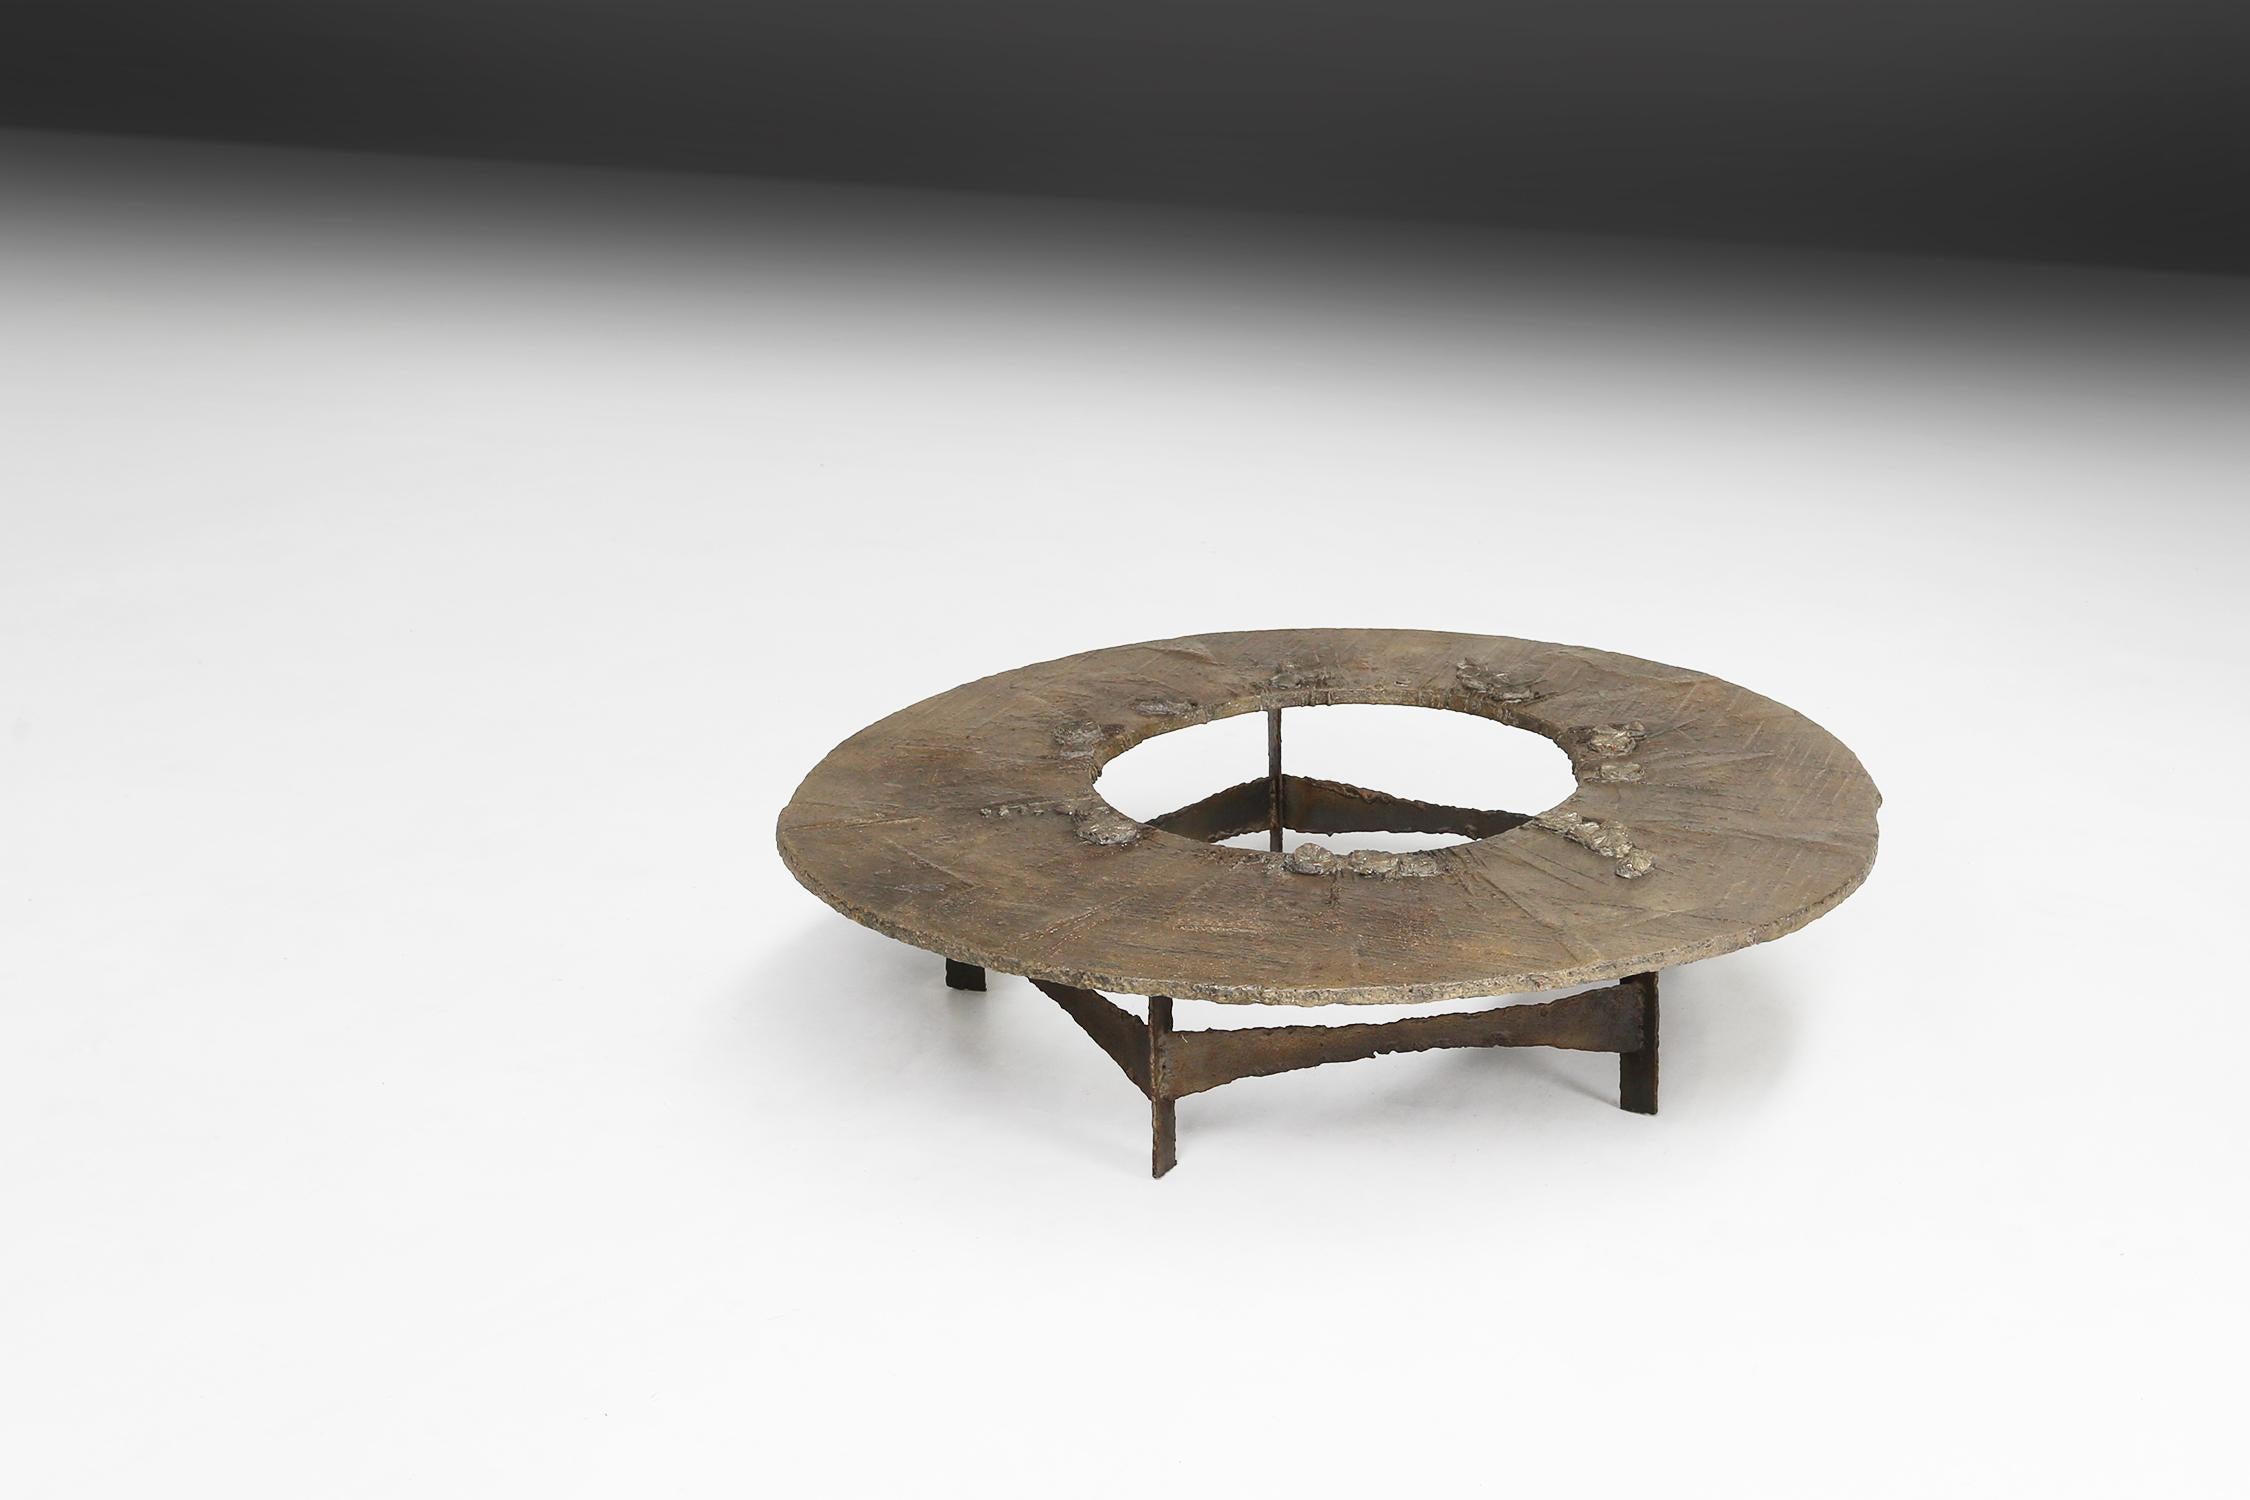 Table basse ancienne fabriquée par Pia Manu dans les années 1960.
Cette table est faite d'un cercle de béton dans lequel sont incrustés des fossiles et de la pyrite. Ceux-ci donnent une belle brillance et la table a une apparence